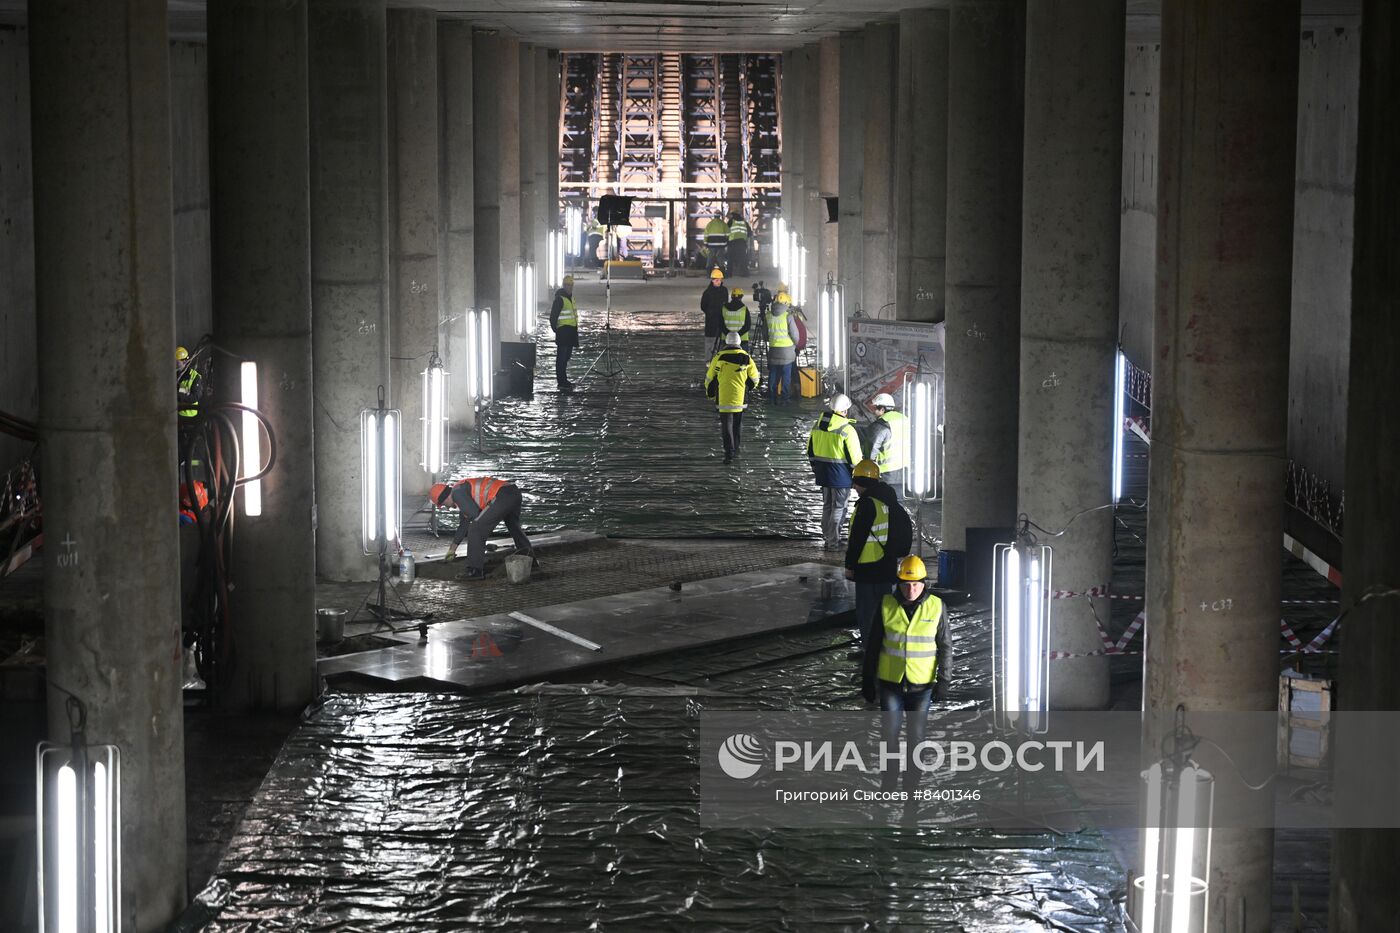 Строительство станции метро "Улица Генерала Тюленева"